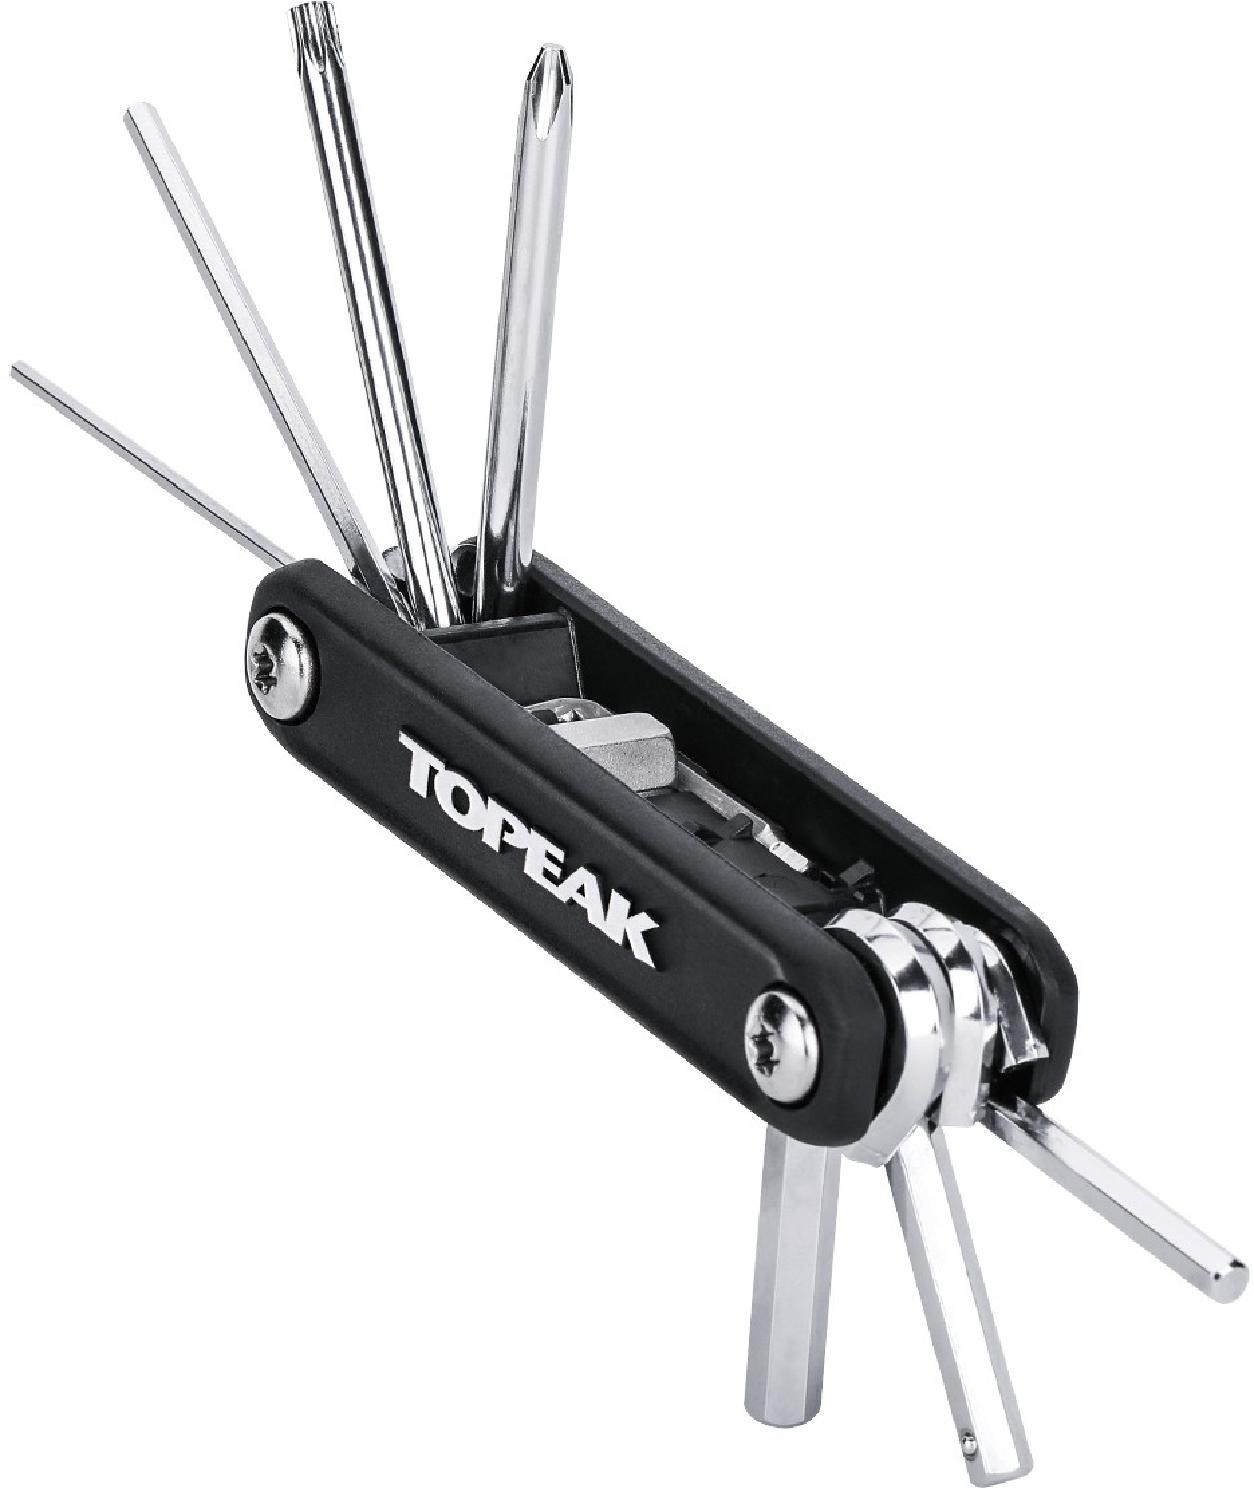 многофункциональный инструмент power lever x topeak цвет one color X-Tool Многофункциональный инструмент Topeak